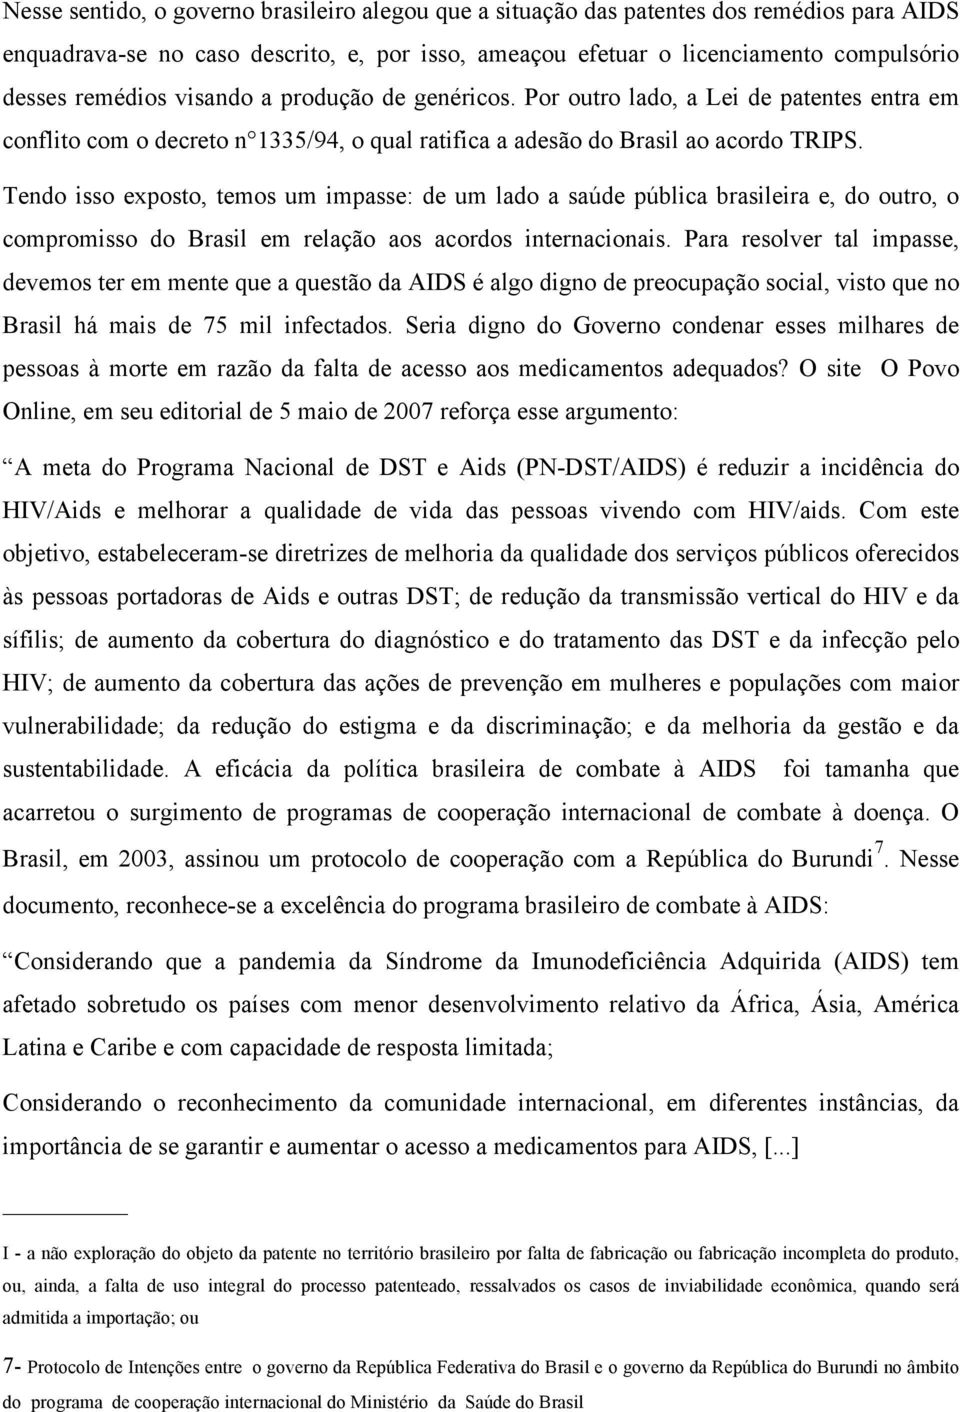 Tendo isso exposto, temos um impasse: de um lado a saúde pública brasileira e, do outro, o compromisso do Brasil em relação aos acordos internacionais.